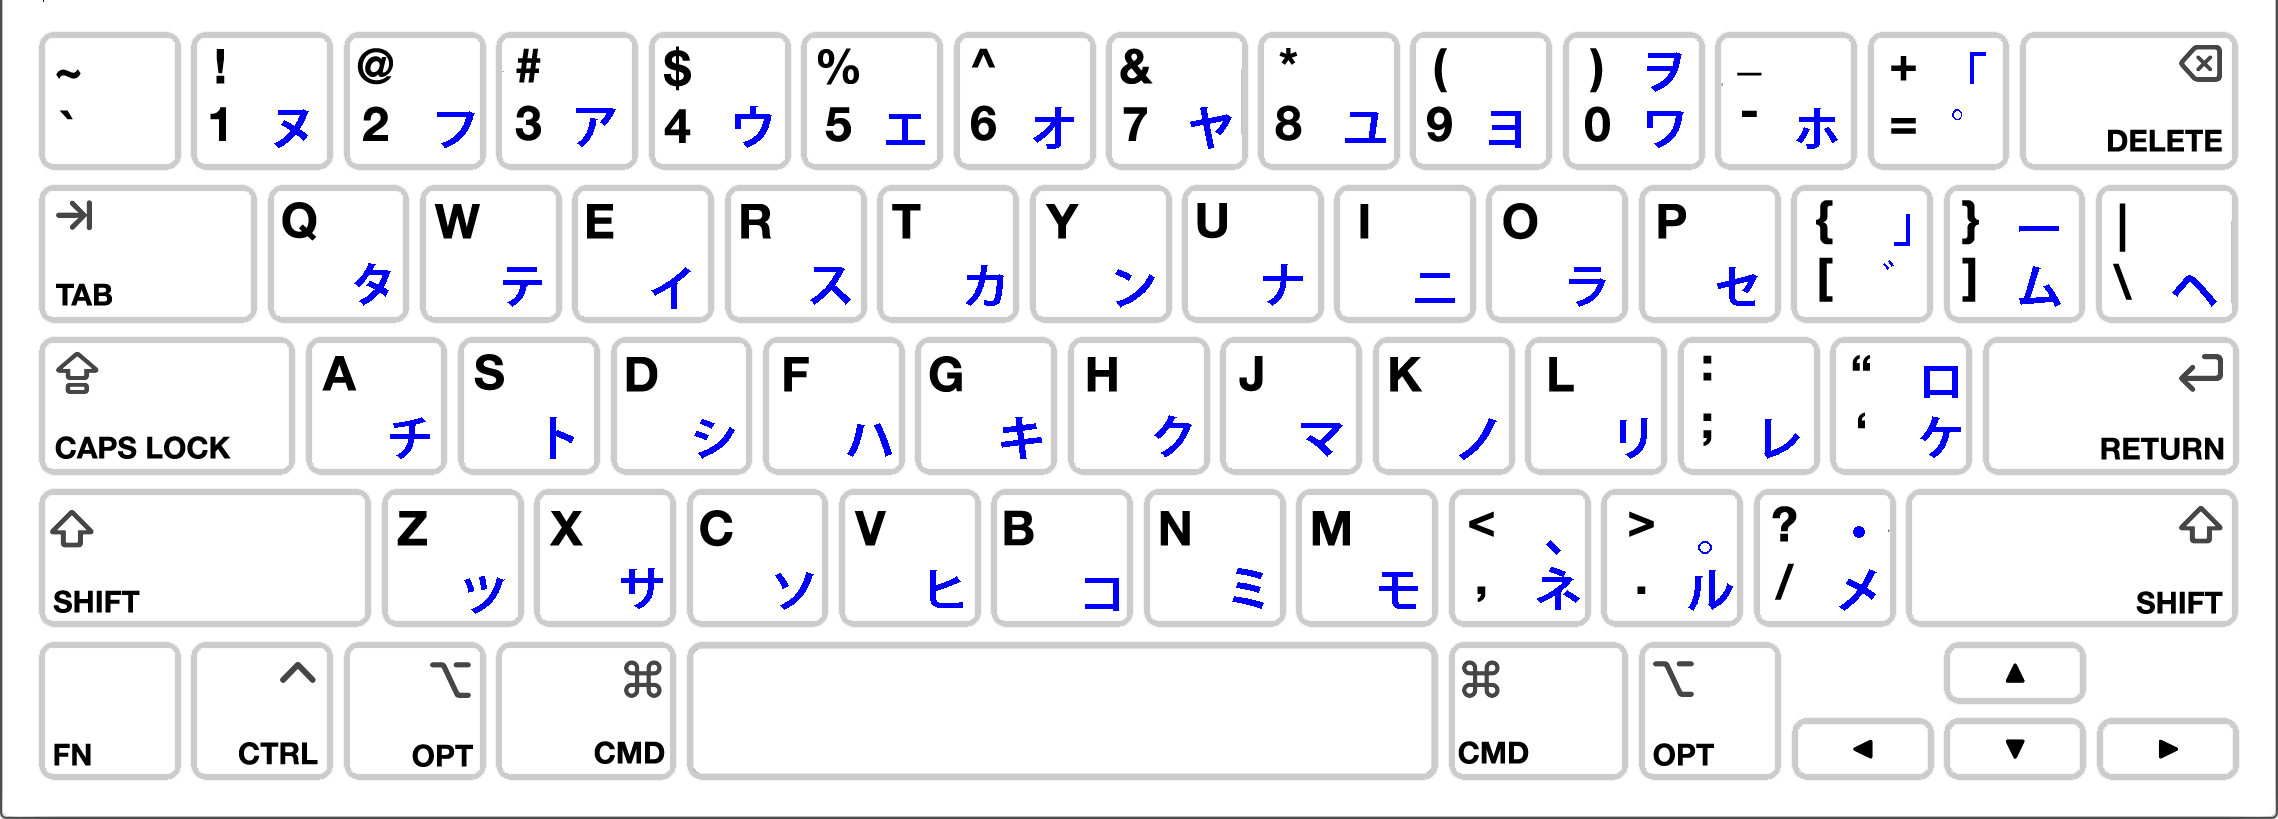 Японская раскладка. Клавиатура катакана. Японская раскладка клавиатуры. Windows 10 японская клавиатура. Клавиатура в японском стиле.